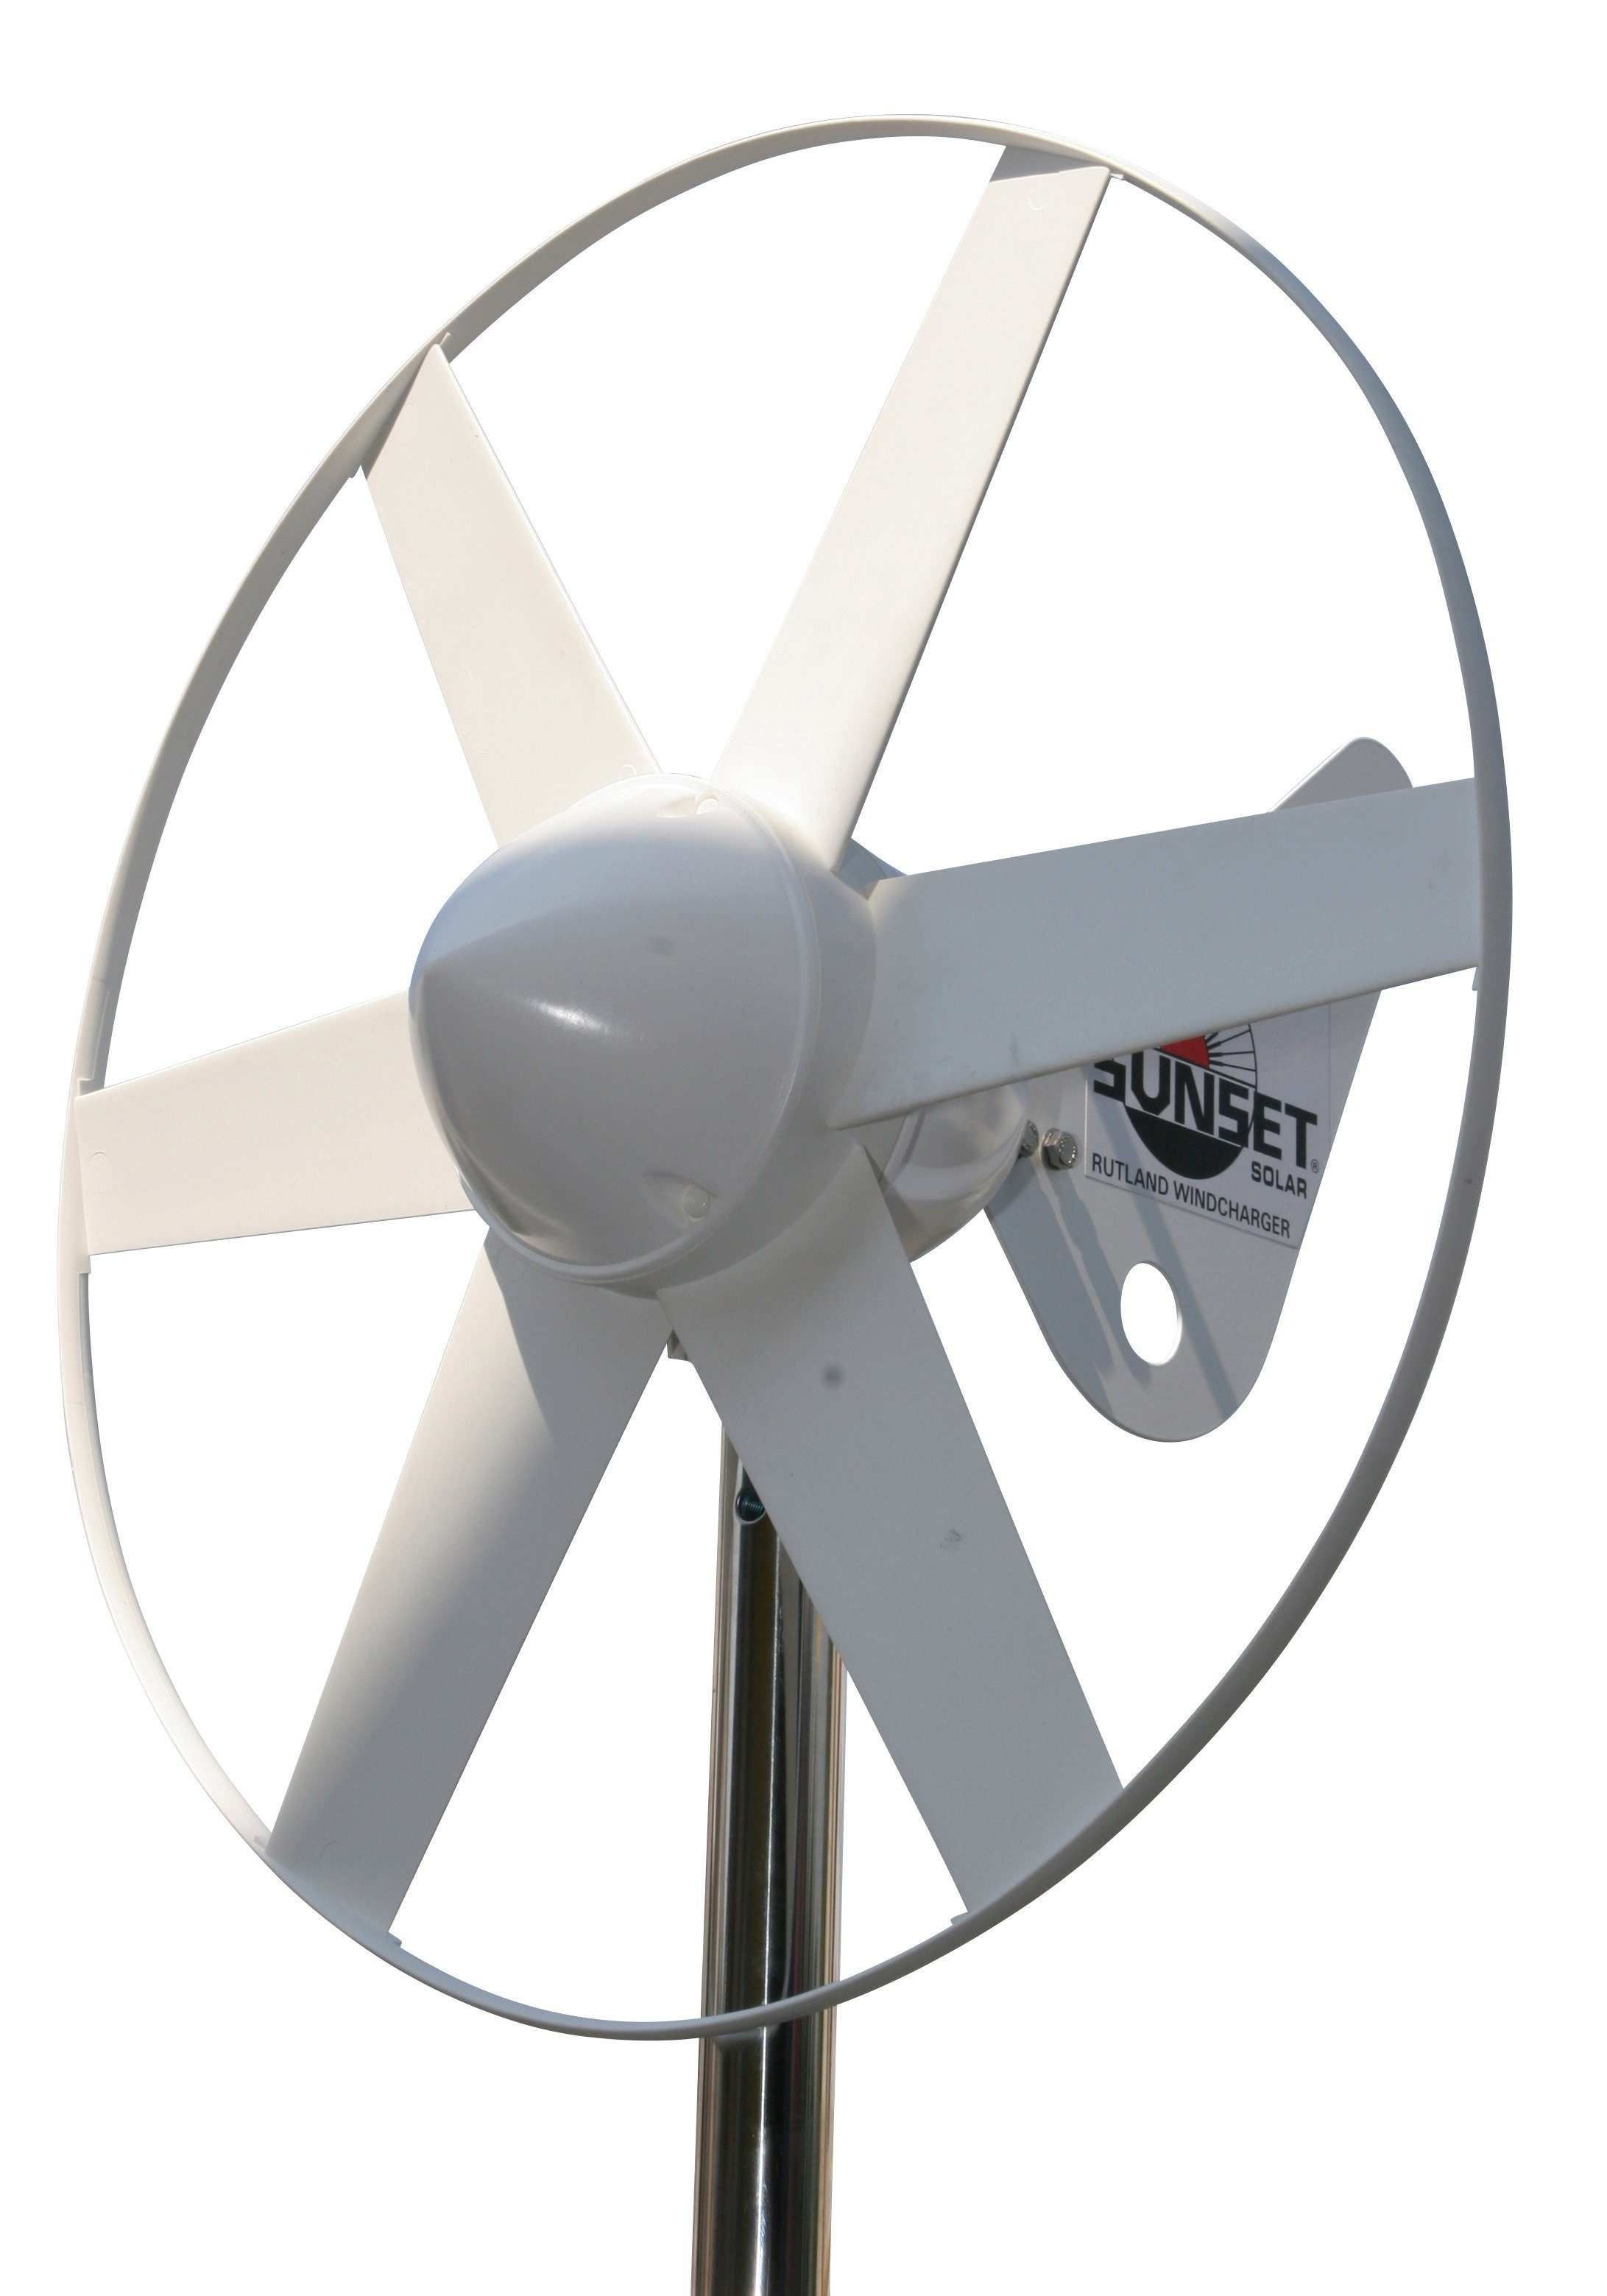 Sunset Windgenerator Solarenergie 12 WG als V, Ergänzung 12 W, 504, zur 80 V